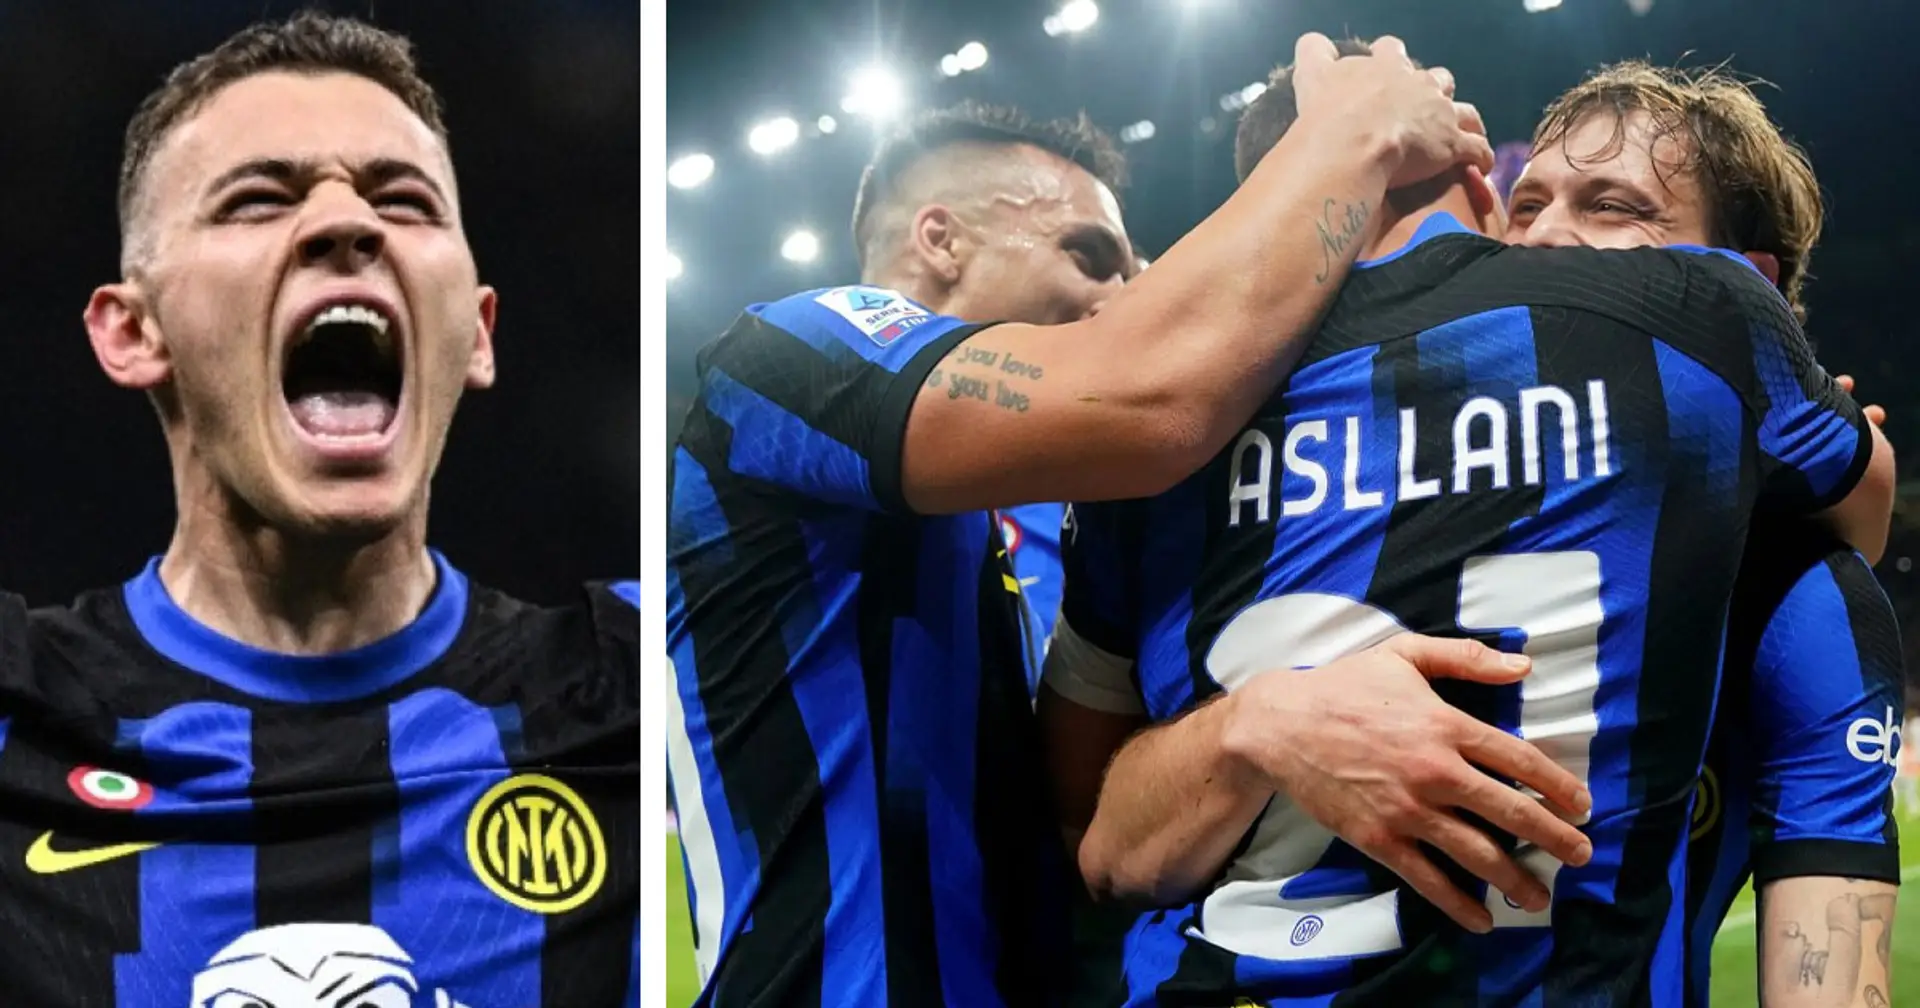 "Che grandissima partita, che jolly": i tifosi dell'Inter hanno eletto il migliore in campo con il Genoa - Non è Asllani